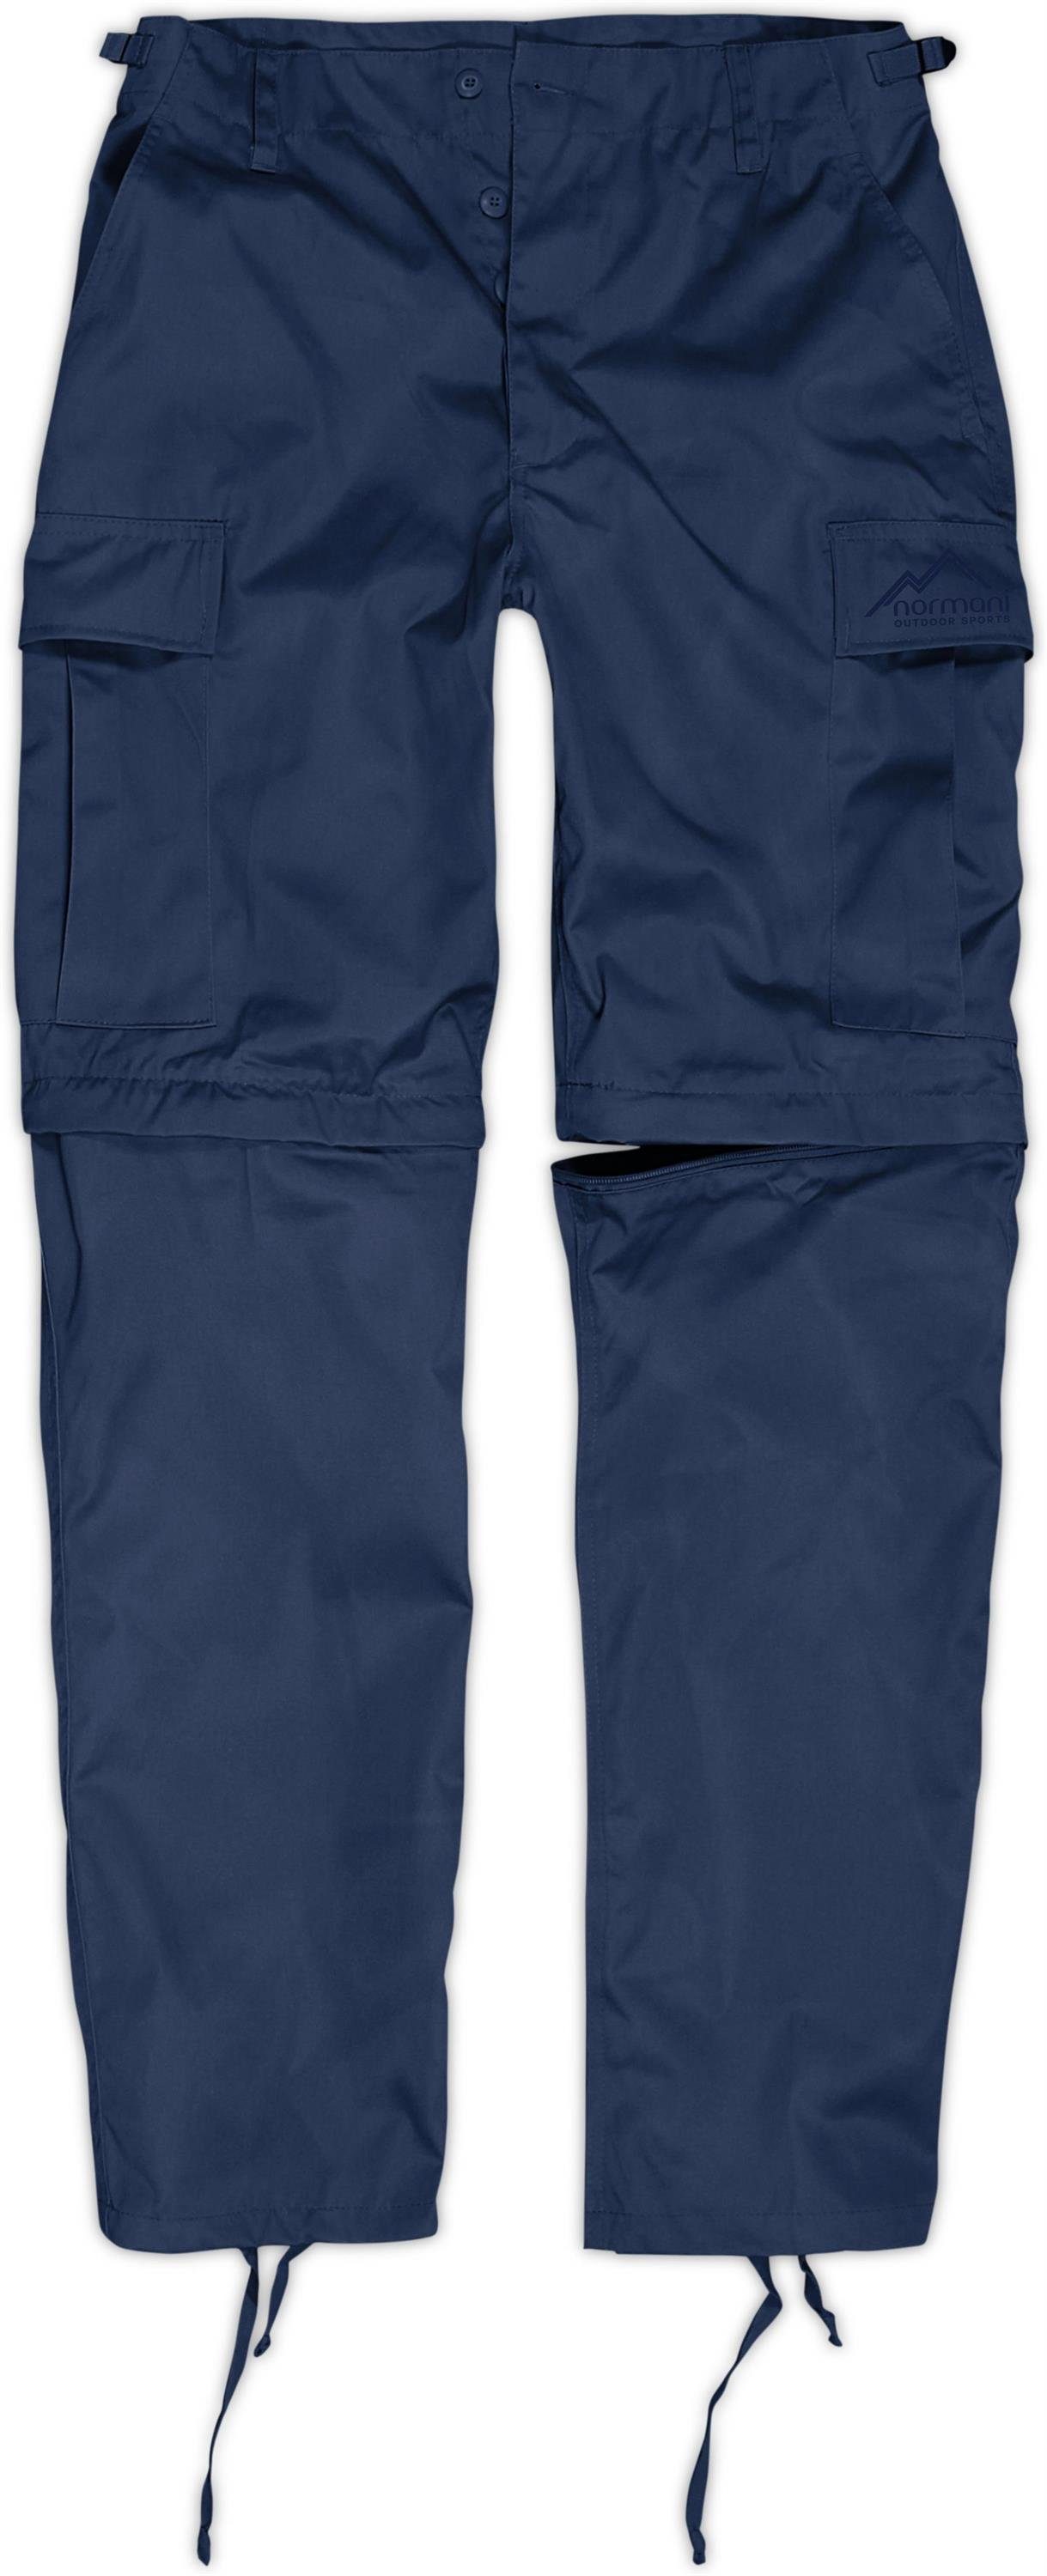 normani Zip-off-Hose Herren 2-in-1 Zip-Off BDU Rangerhose Pioneer Outdoorhose Feldhose mit per Reißverschluss abtrennbaren Hosenbeinen Navy